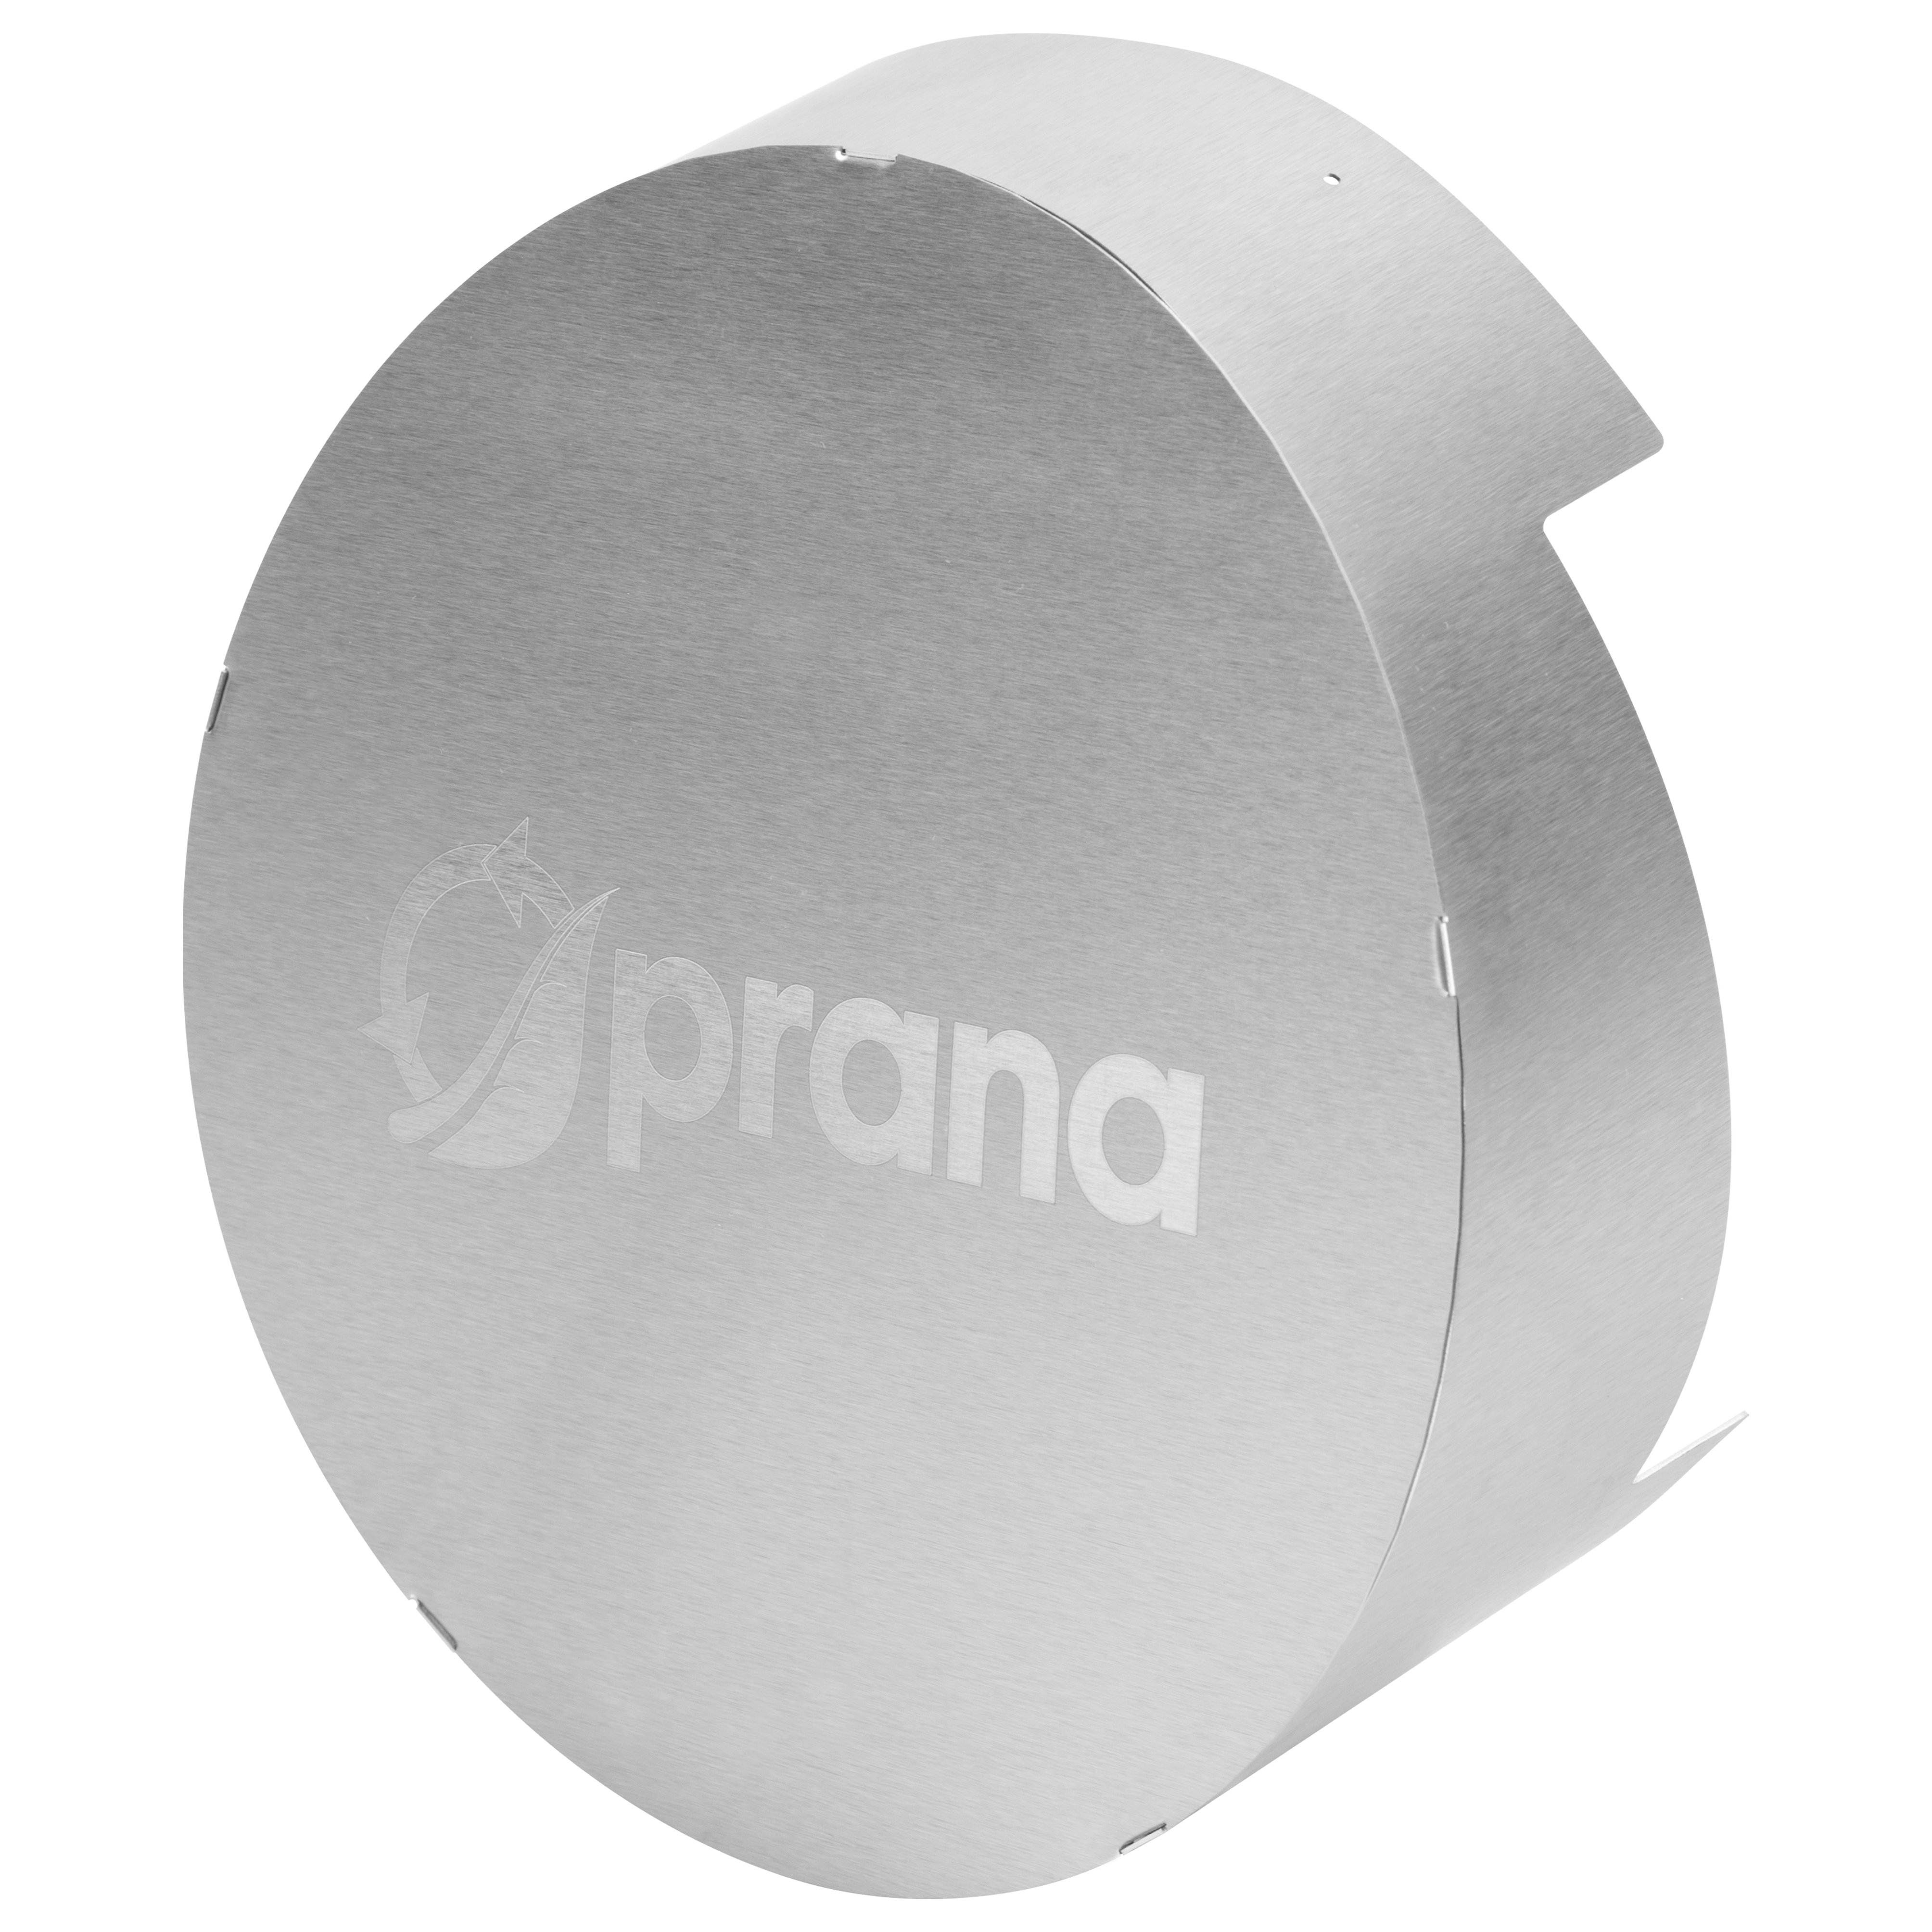 Отзывы колпак prana вентиляционный Prana MC 2001 в Украине